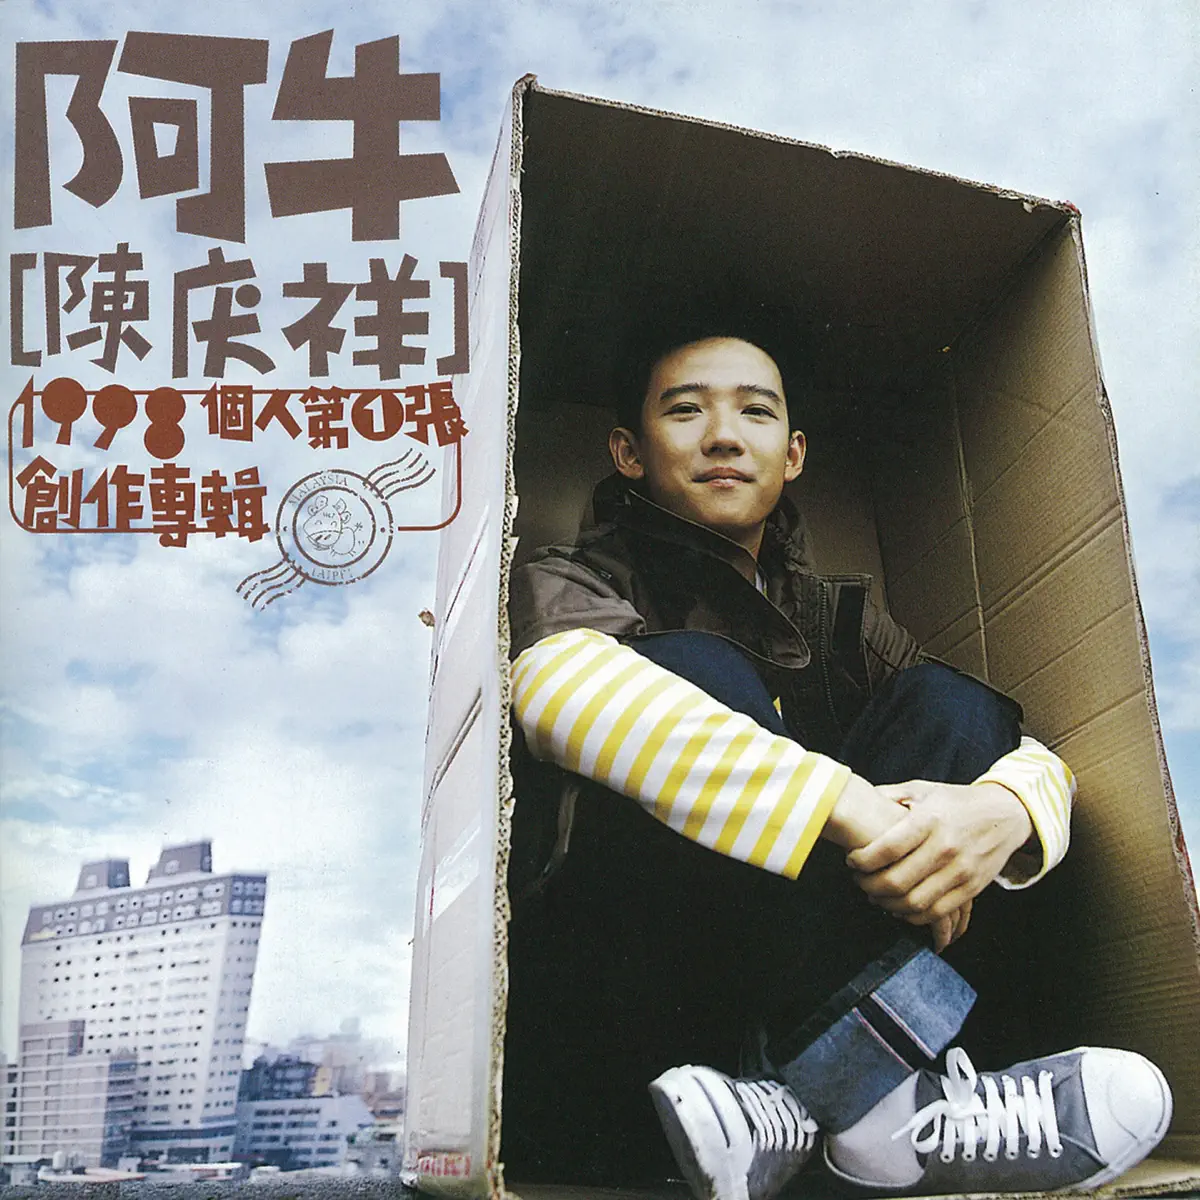 阿牛 - 阿牛陈庆祥个人第一张创作专辑 (1998) [iTunes Plus AAC M4A]-新房子